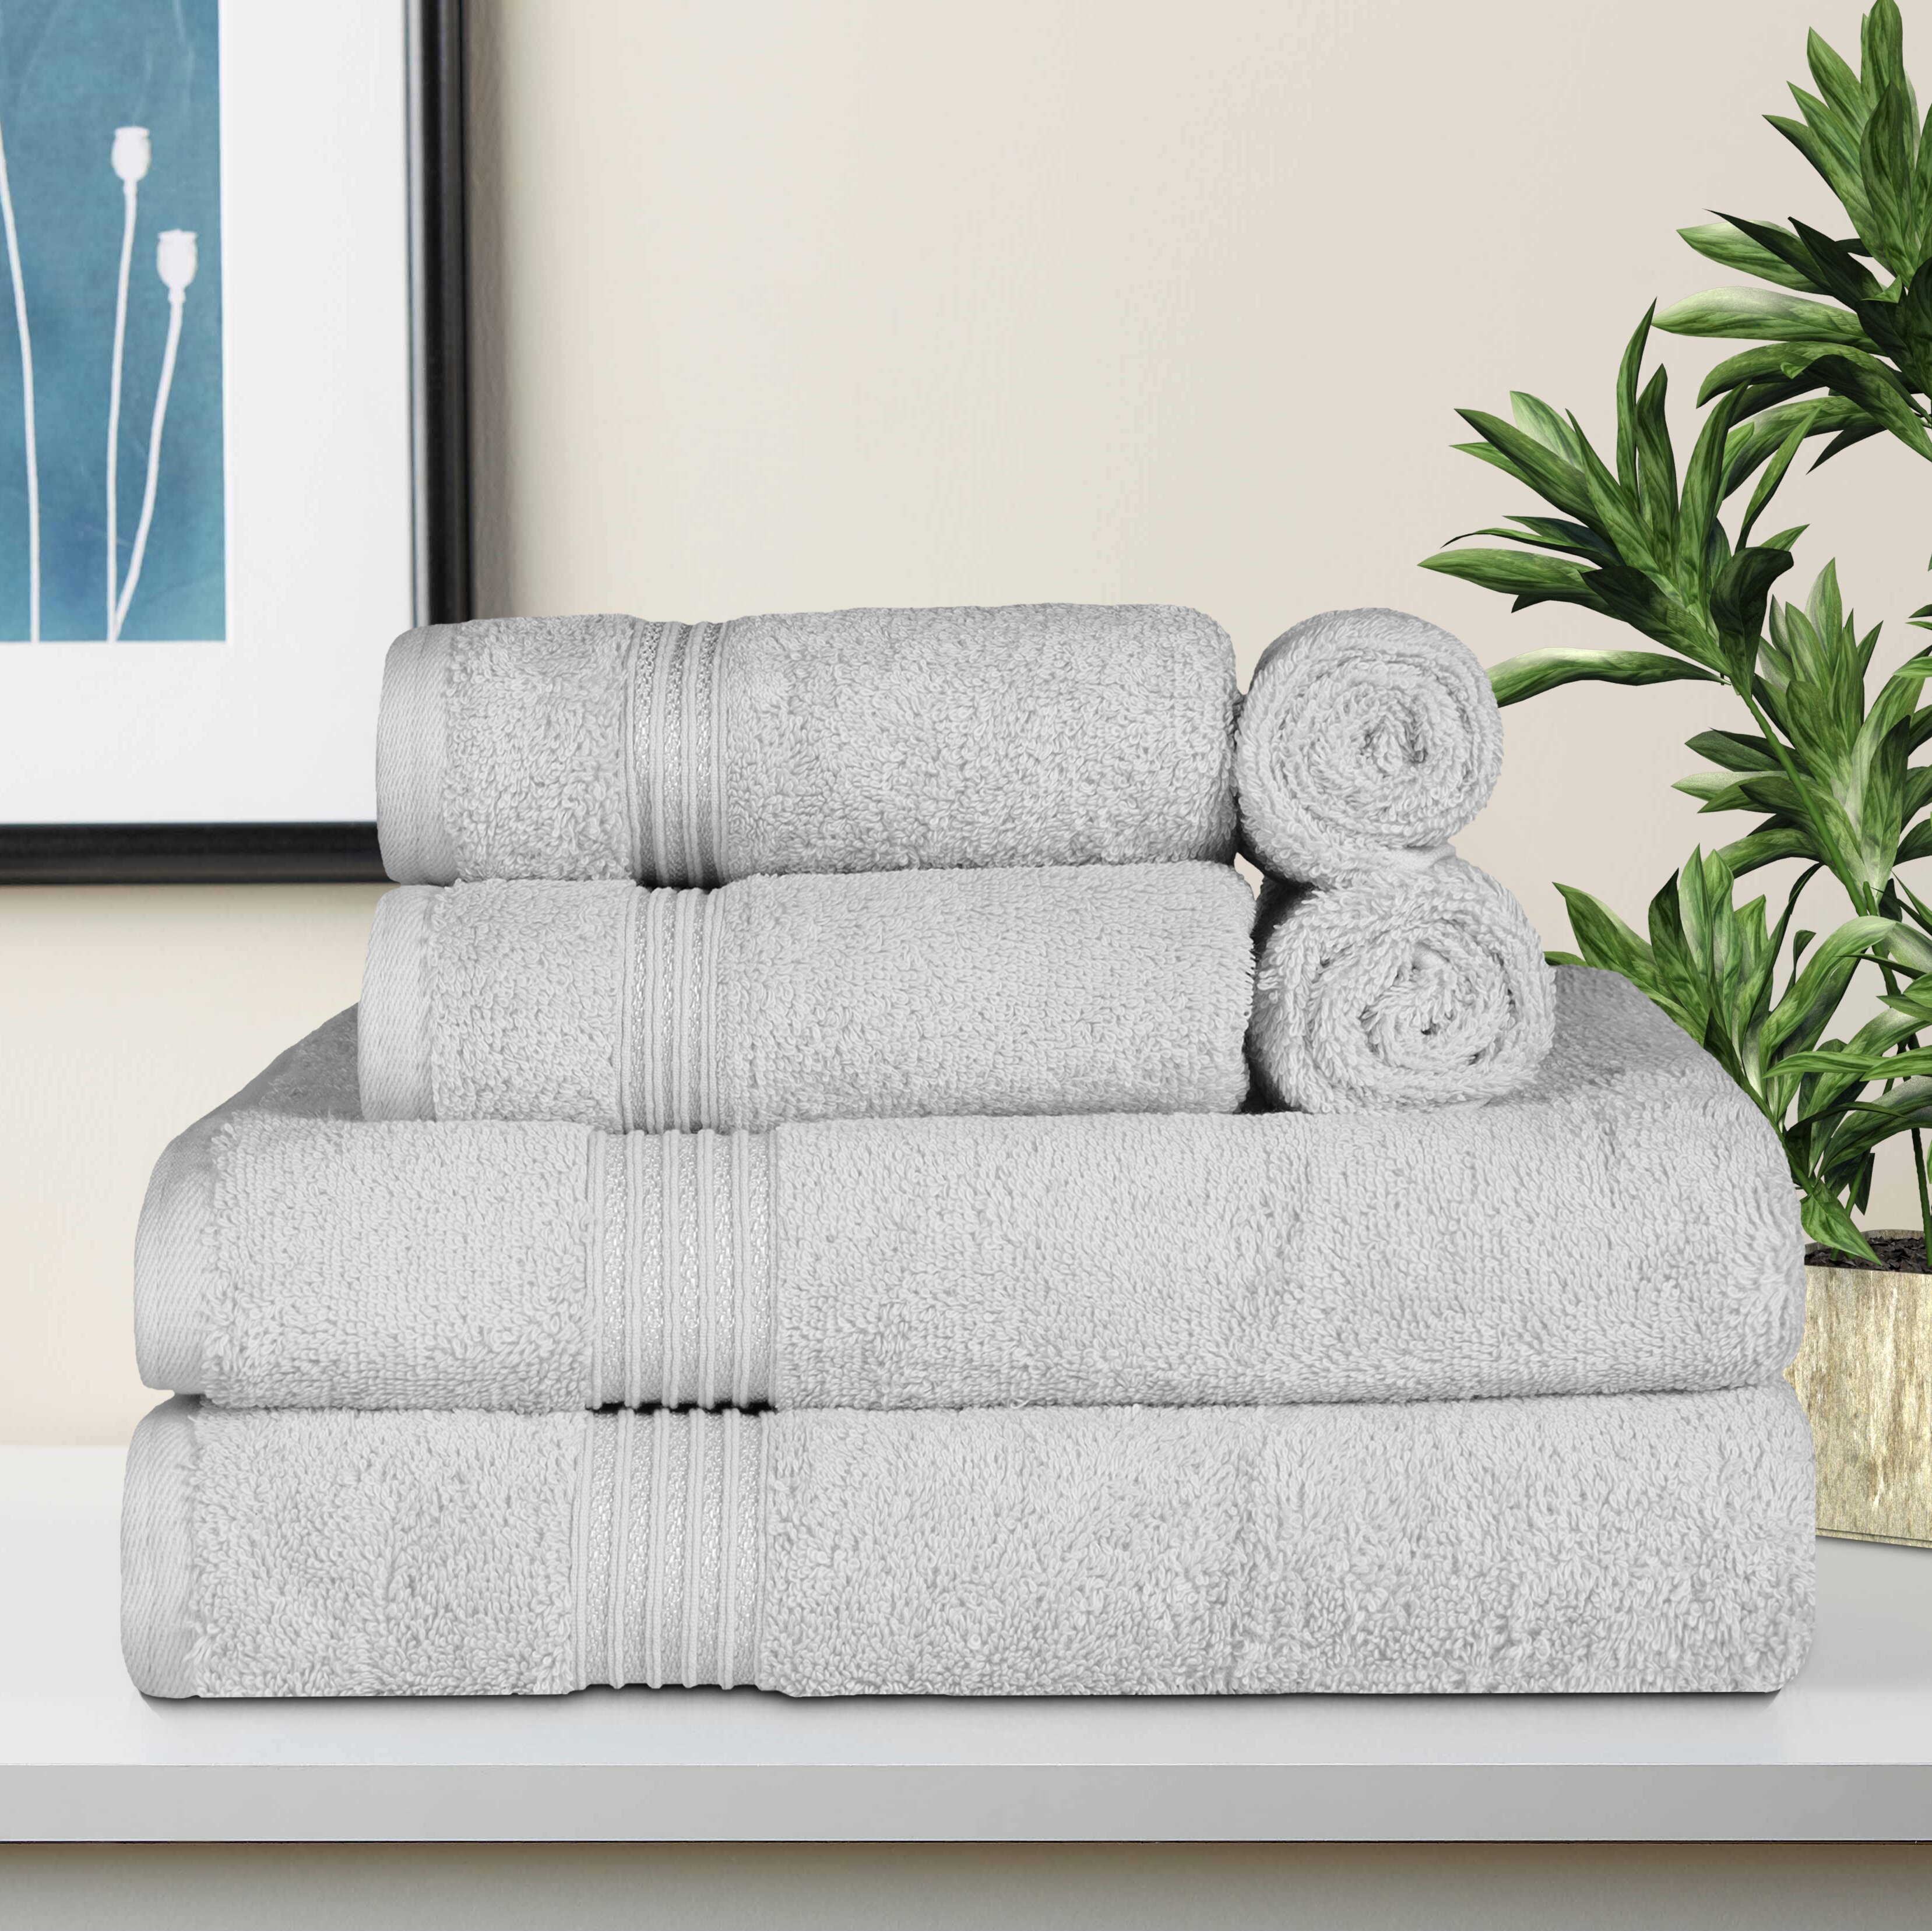 white natural gray black blue kitchen towels pure linen towel set Four guest towels